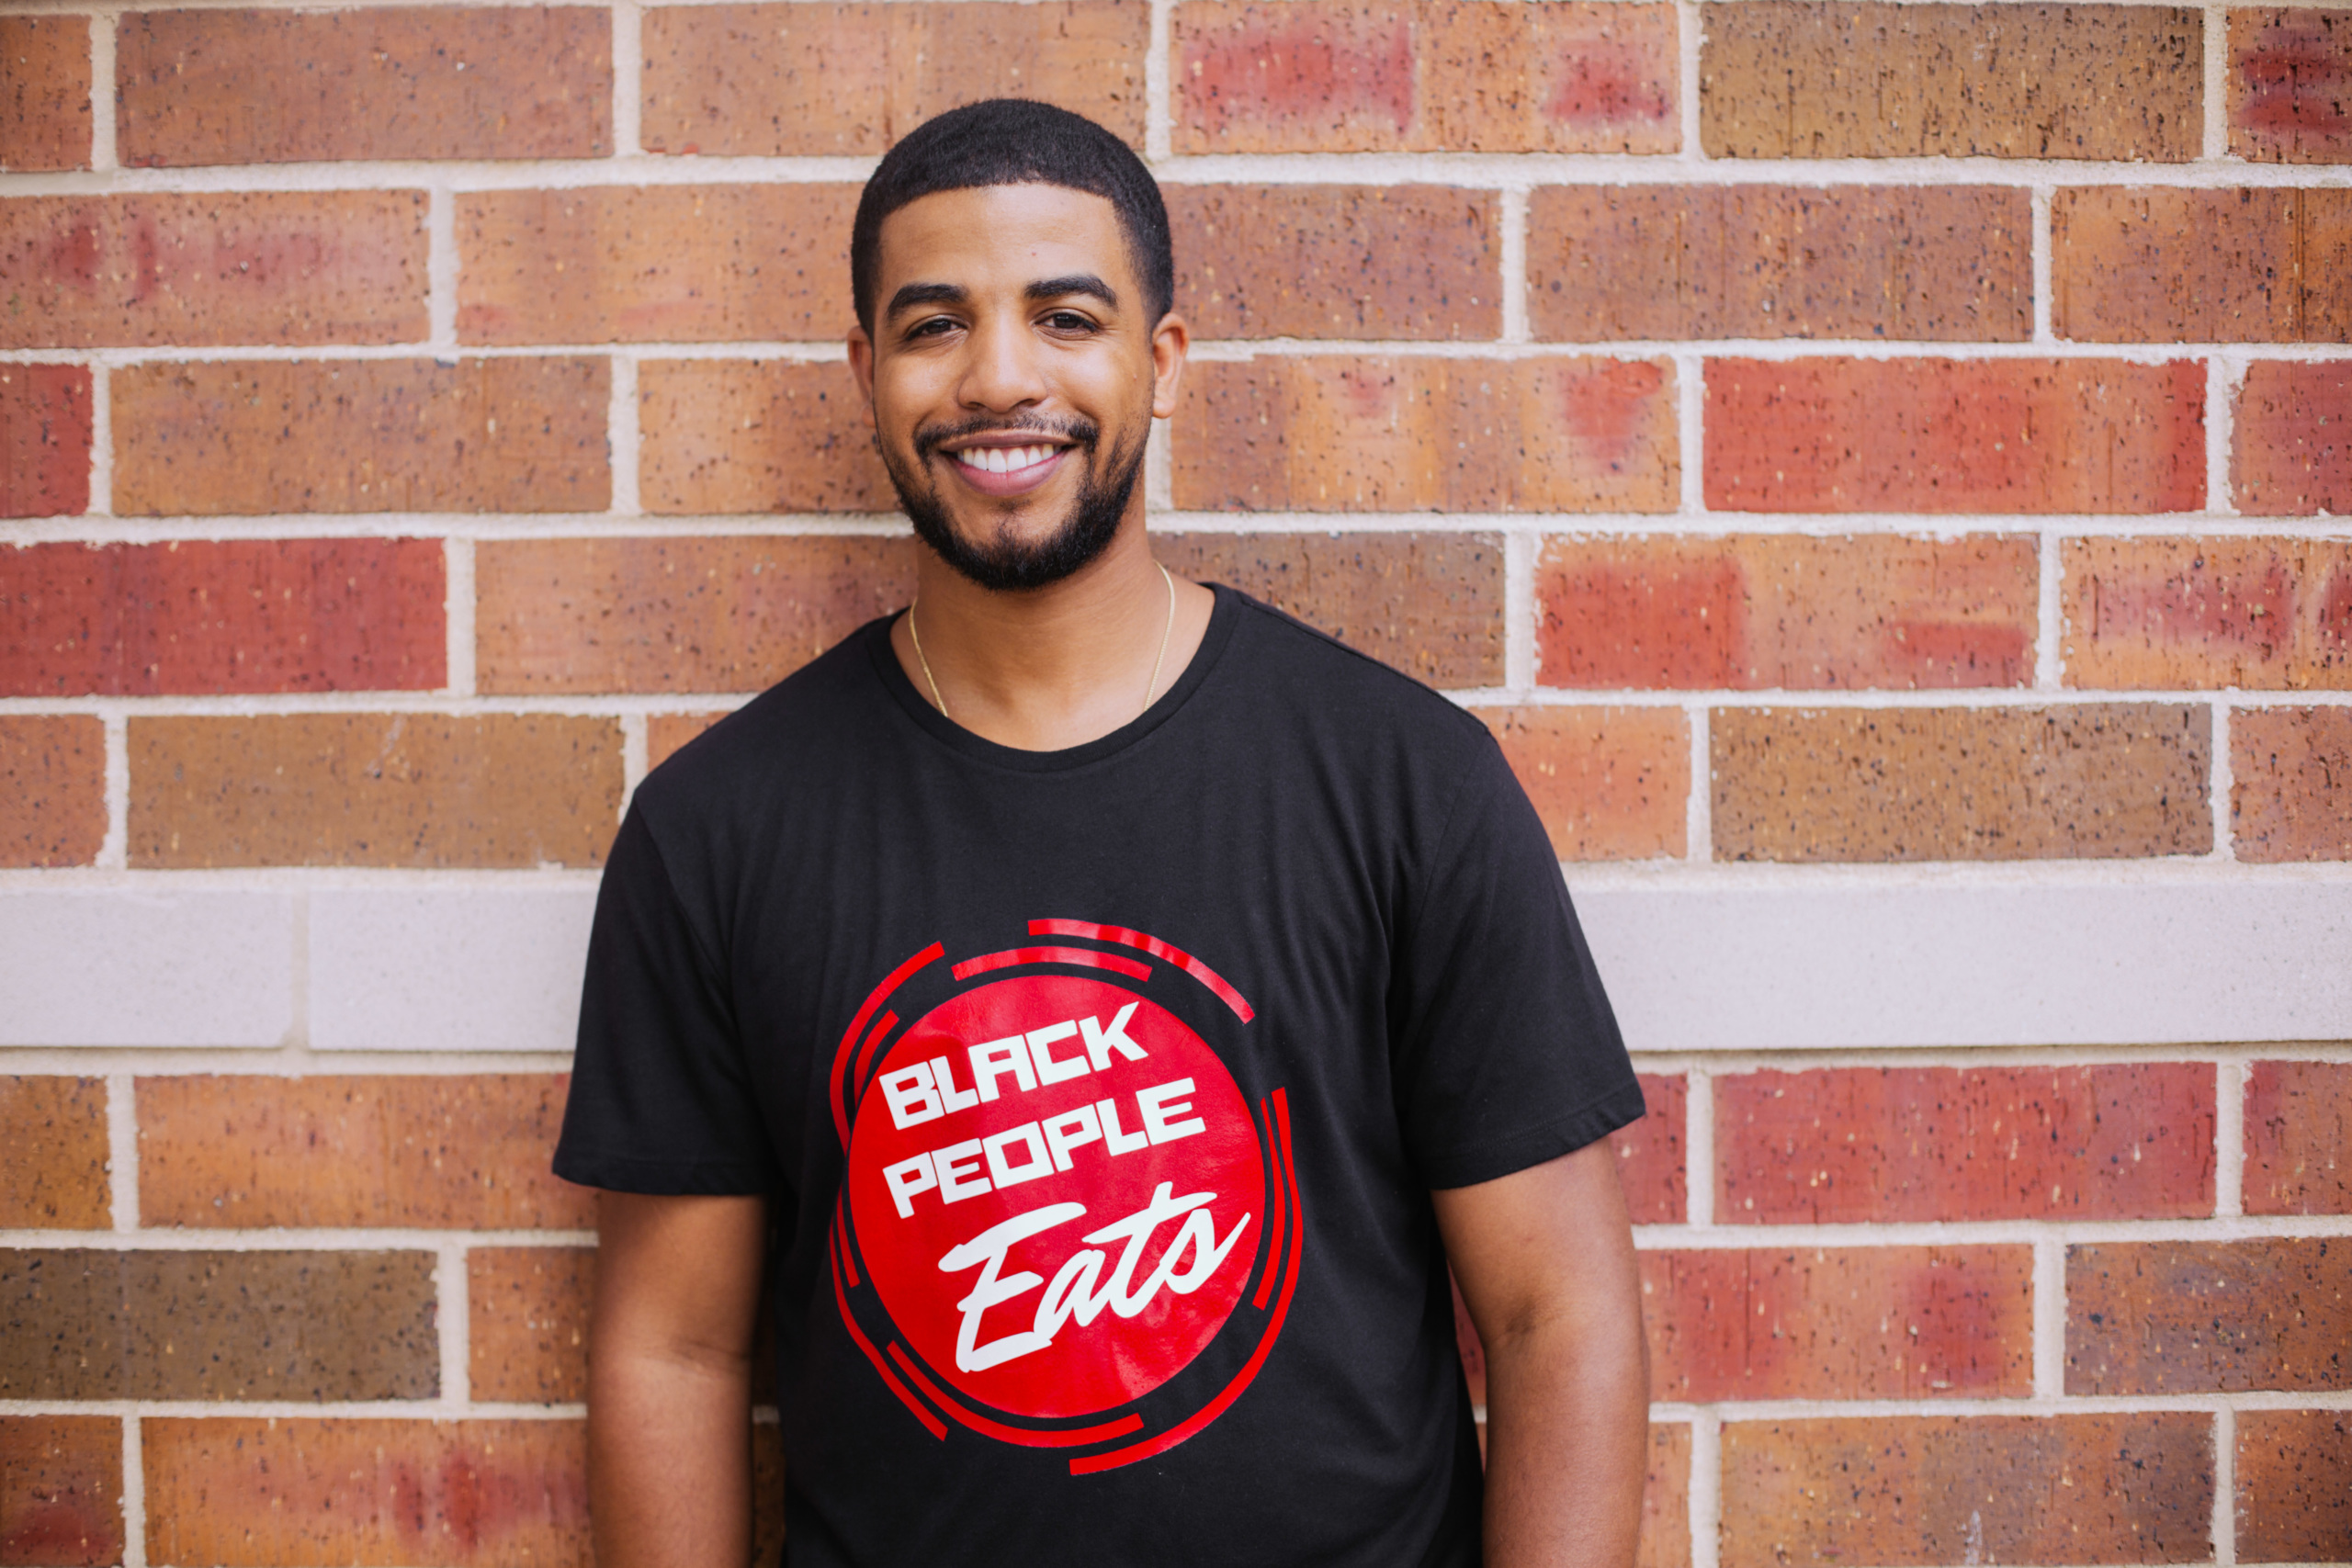 Black People Eats founder Jeremy Joyce. / Credit: Arion Davis